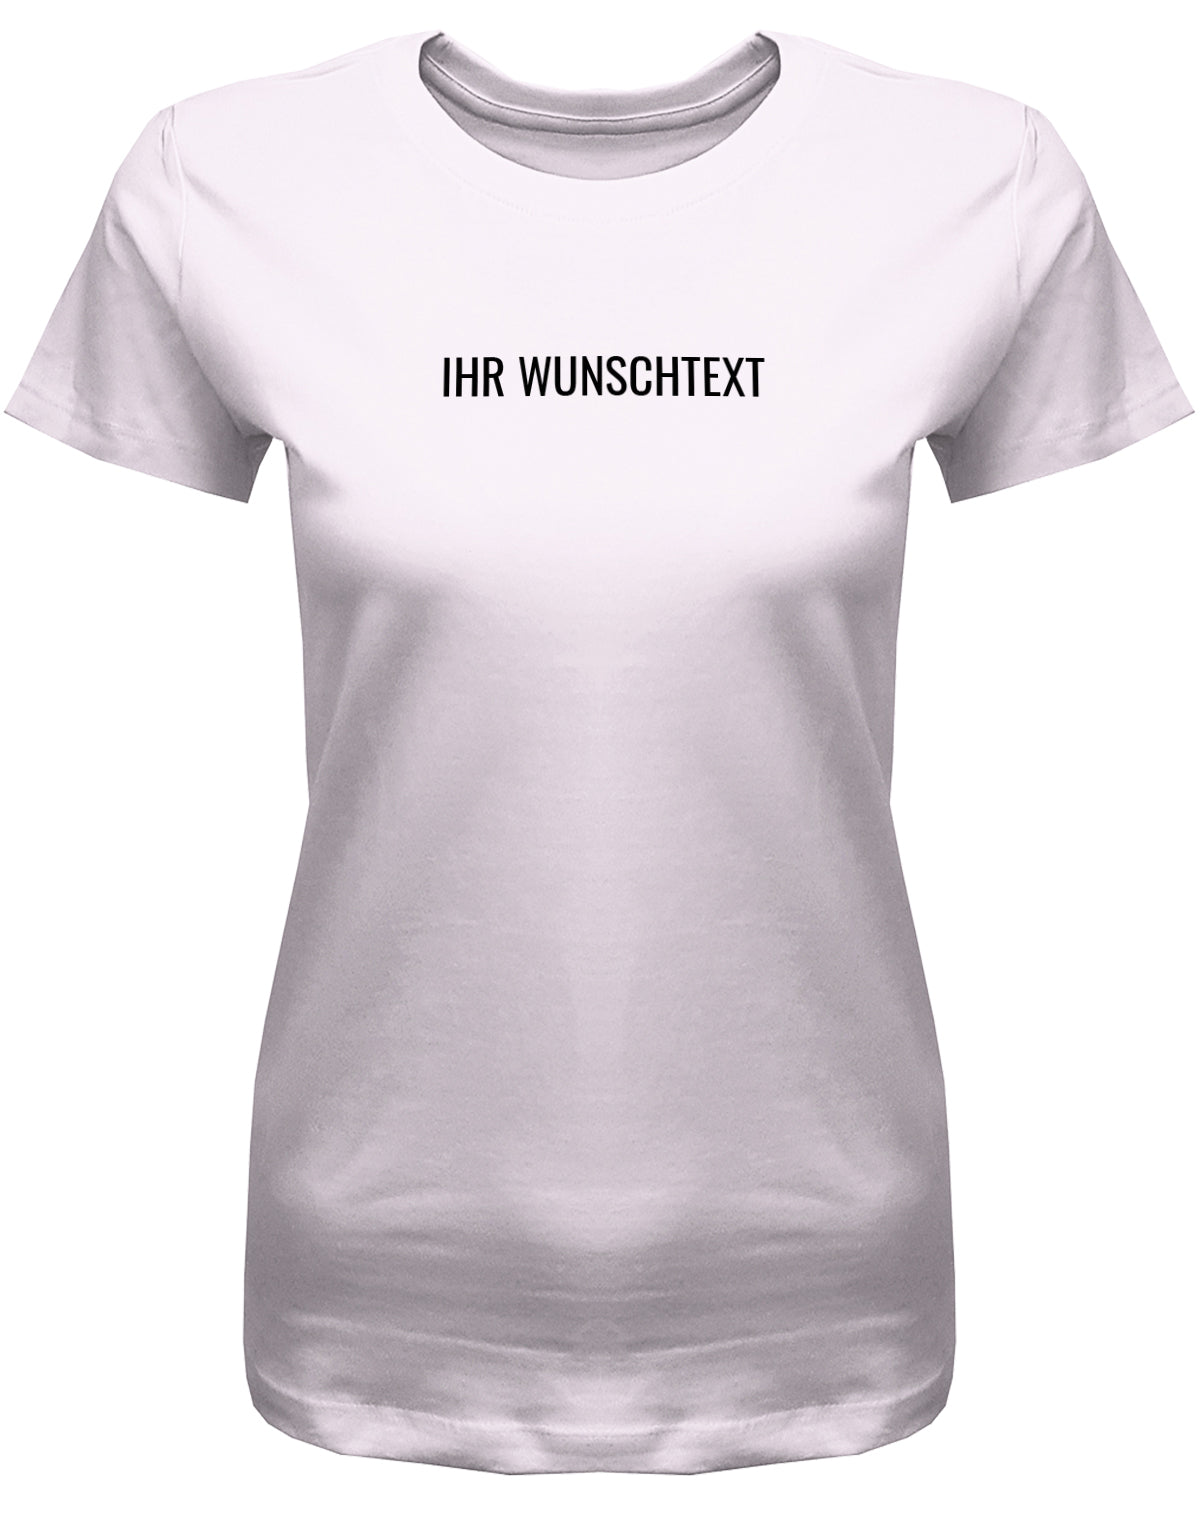 Frauen Tshirt mit Wunschtext. Minimalistisches Design. Rosa